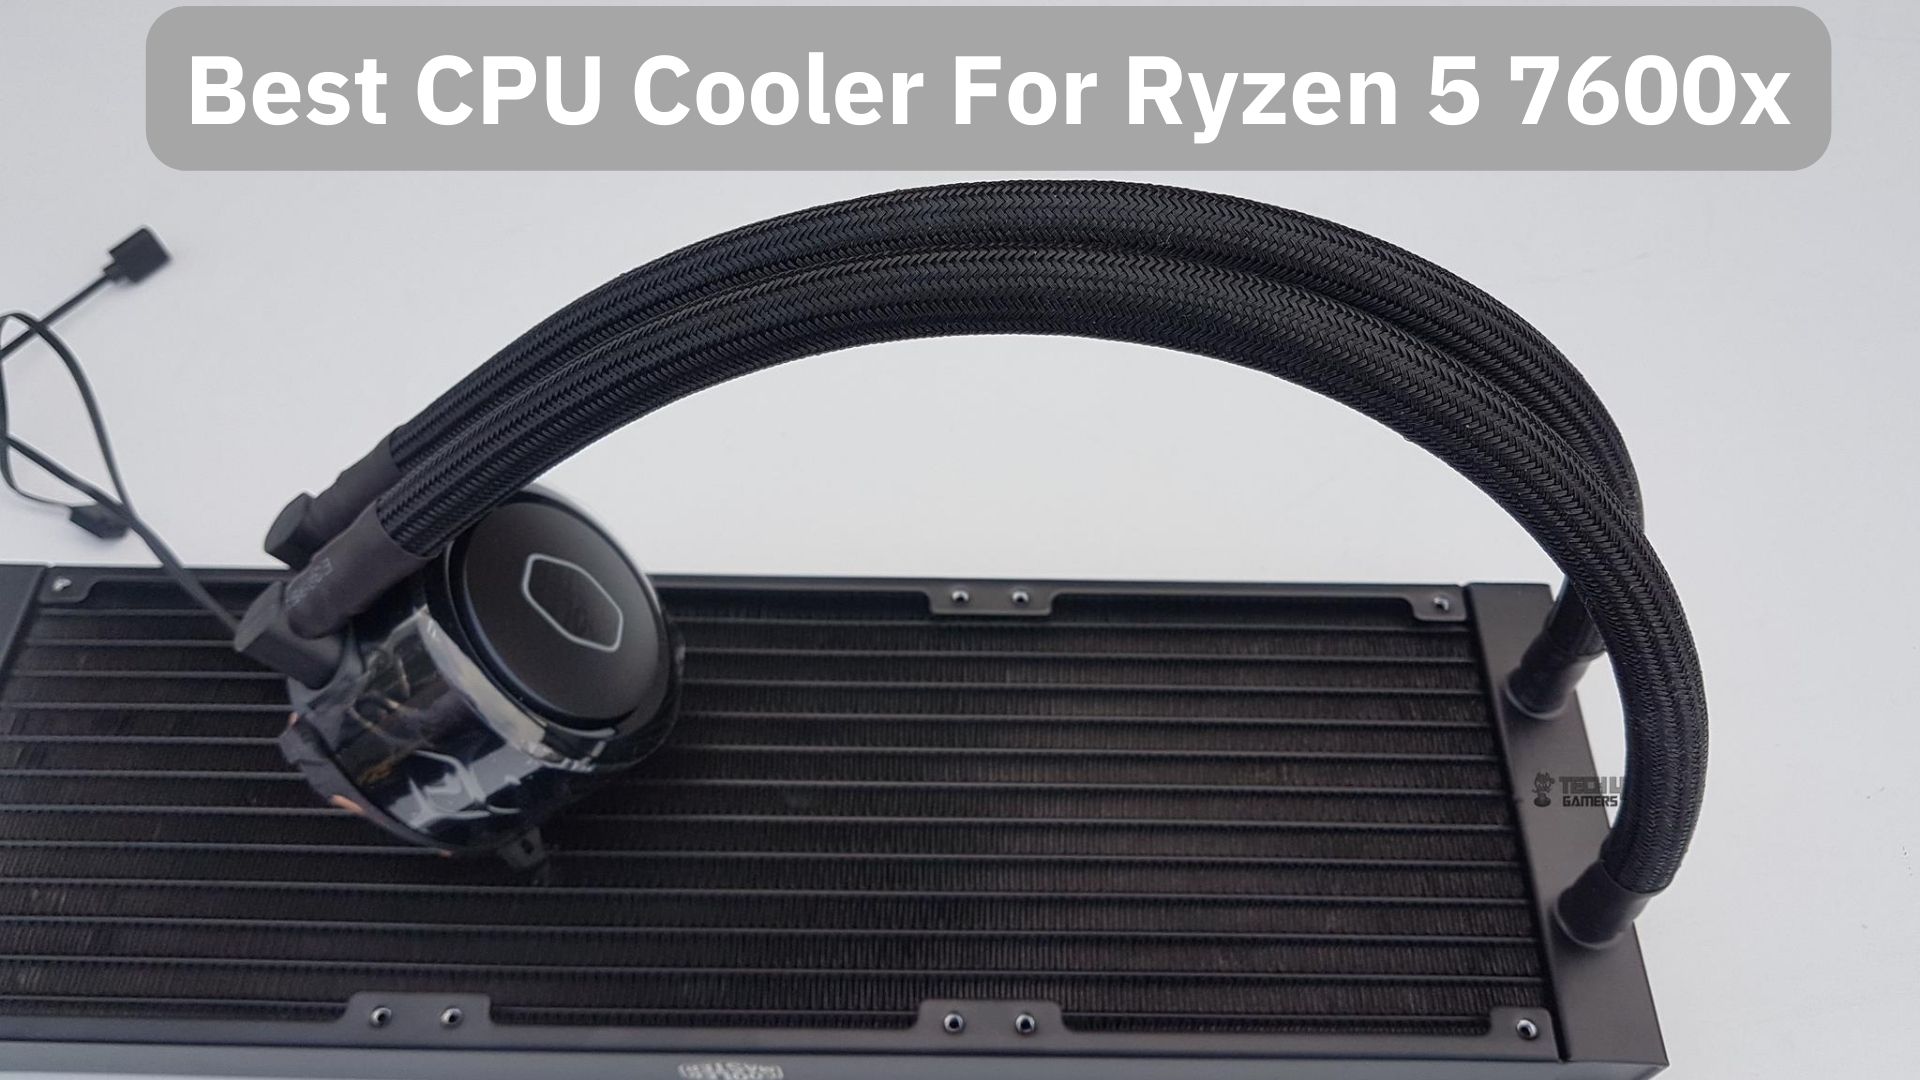 AMD AMD RYZEN 5 7600X W O COOLER